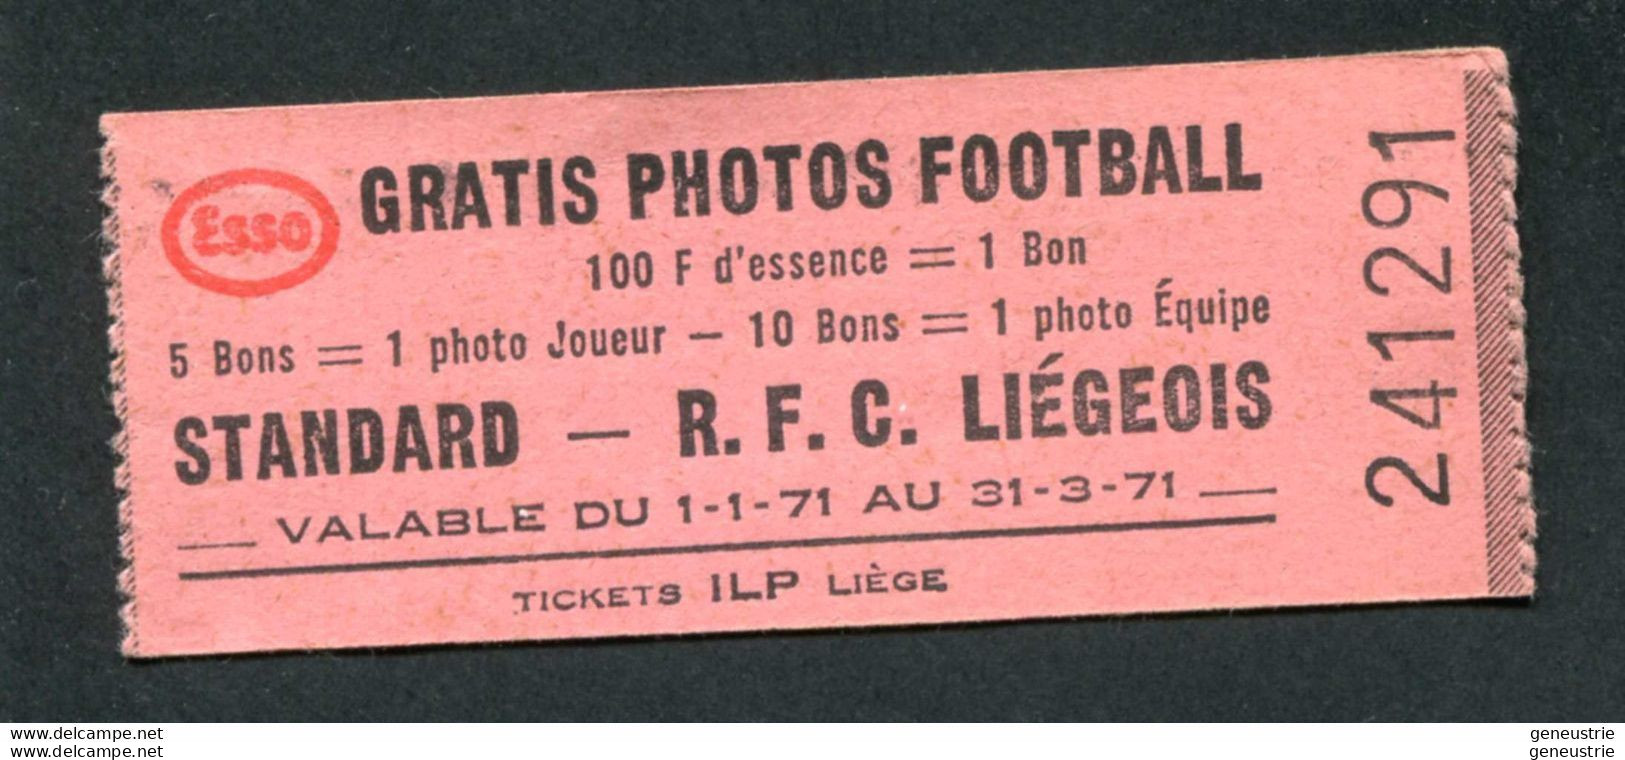 Jeton-carton De Nécessité - Ticket-prime 1971 "Esso Gratis Photos Football - R.F.C. Liégeois - ILP à Liège" - Noodgeld